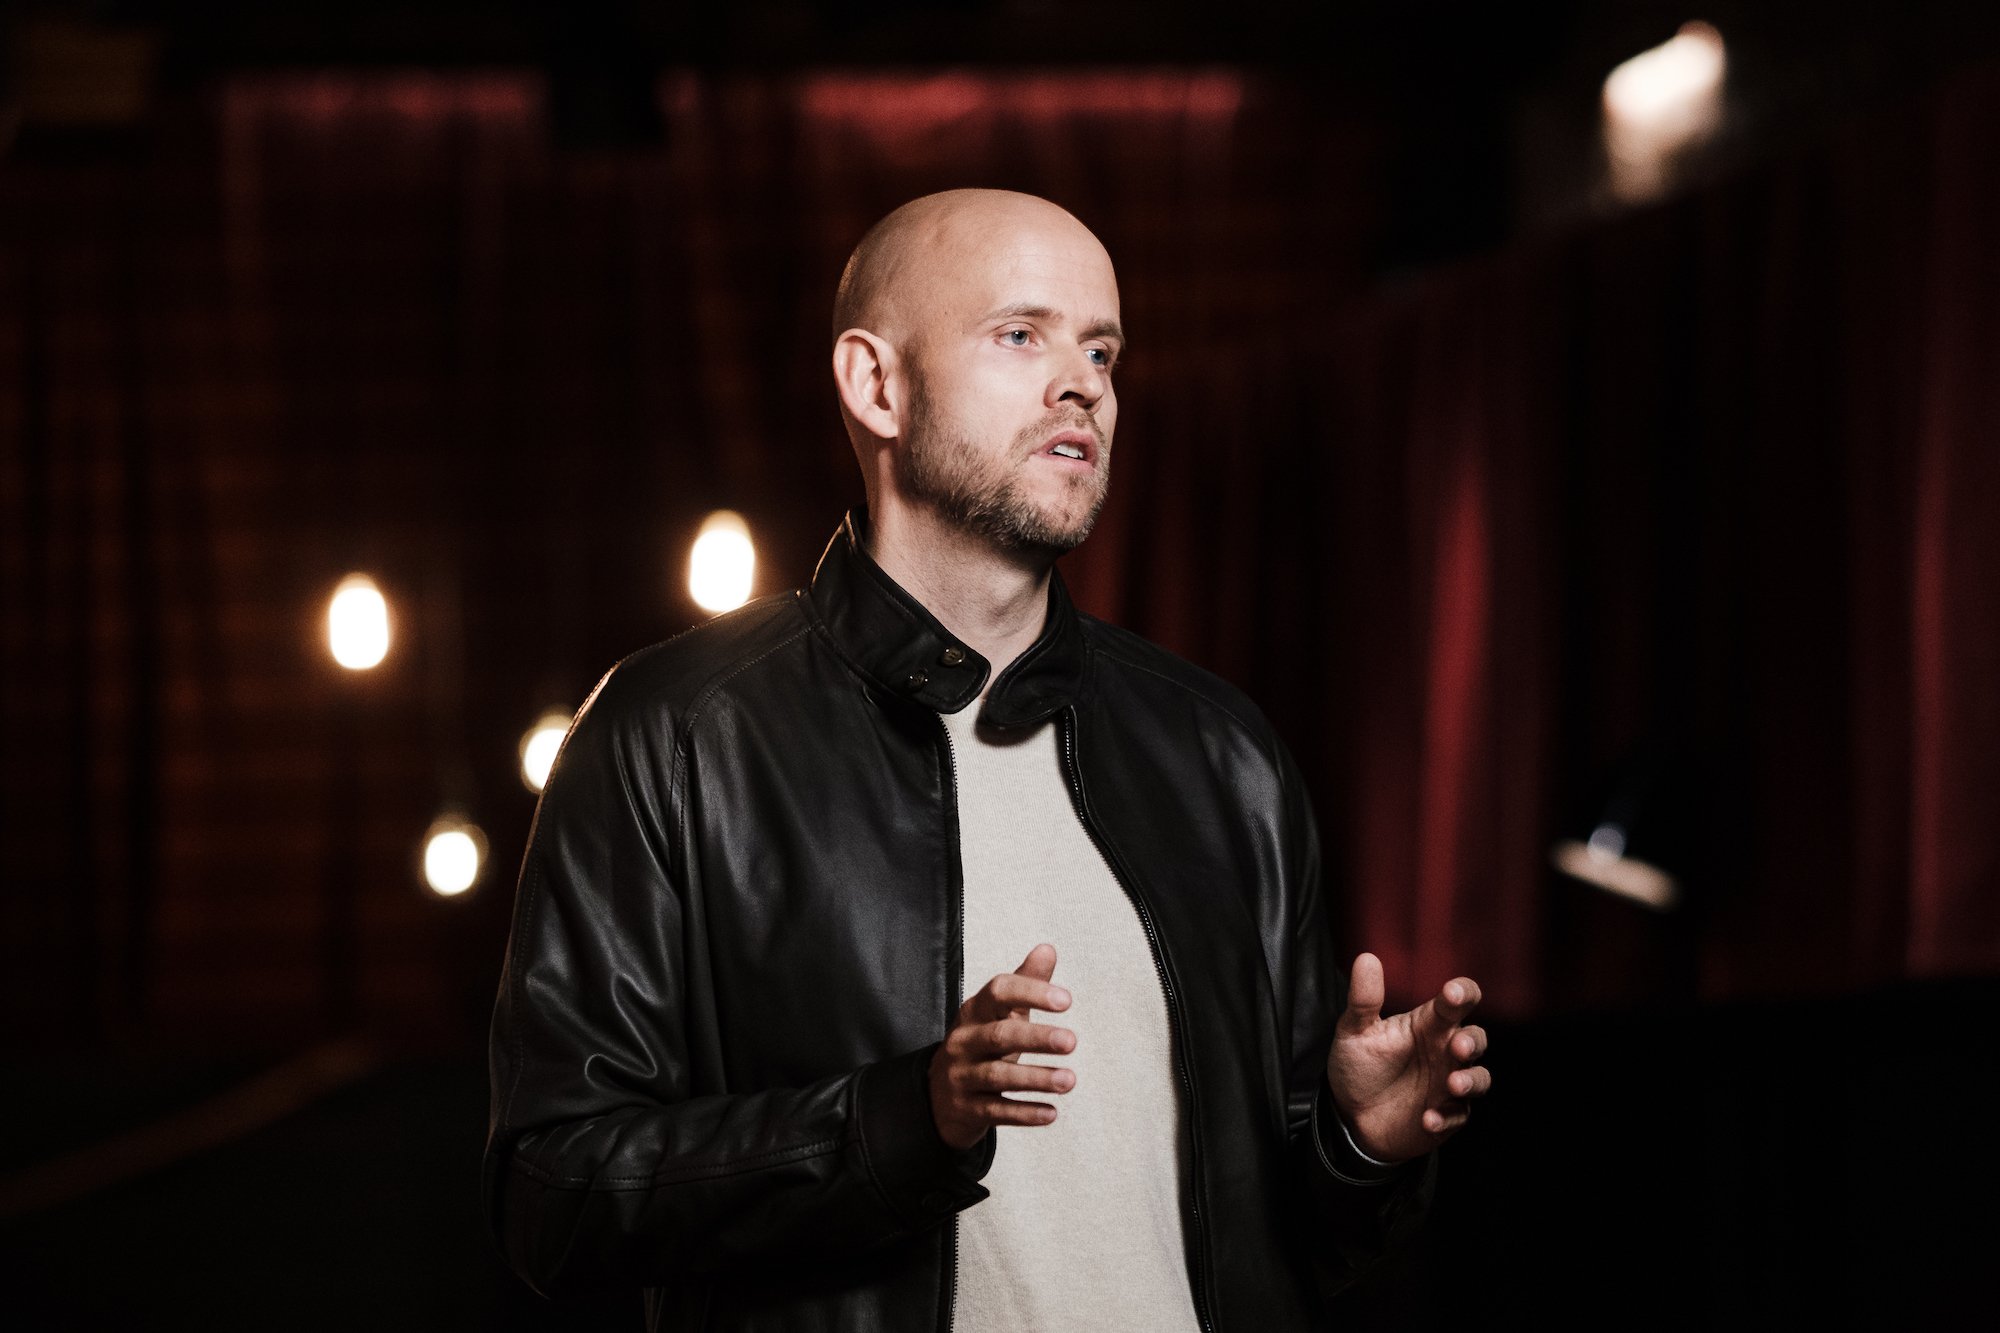 Daniel Ek perfil de um dos fundadores e CEO do Spotify